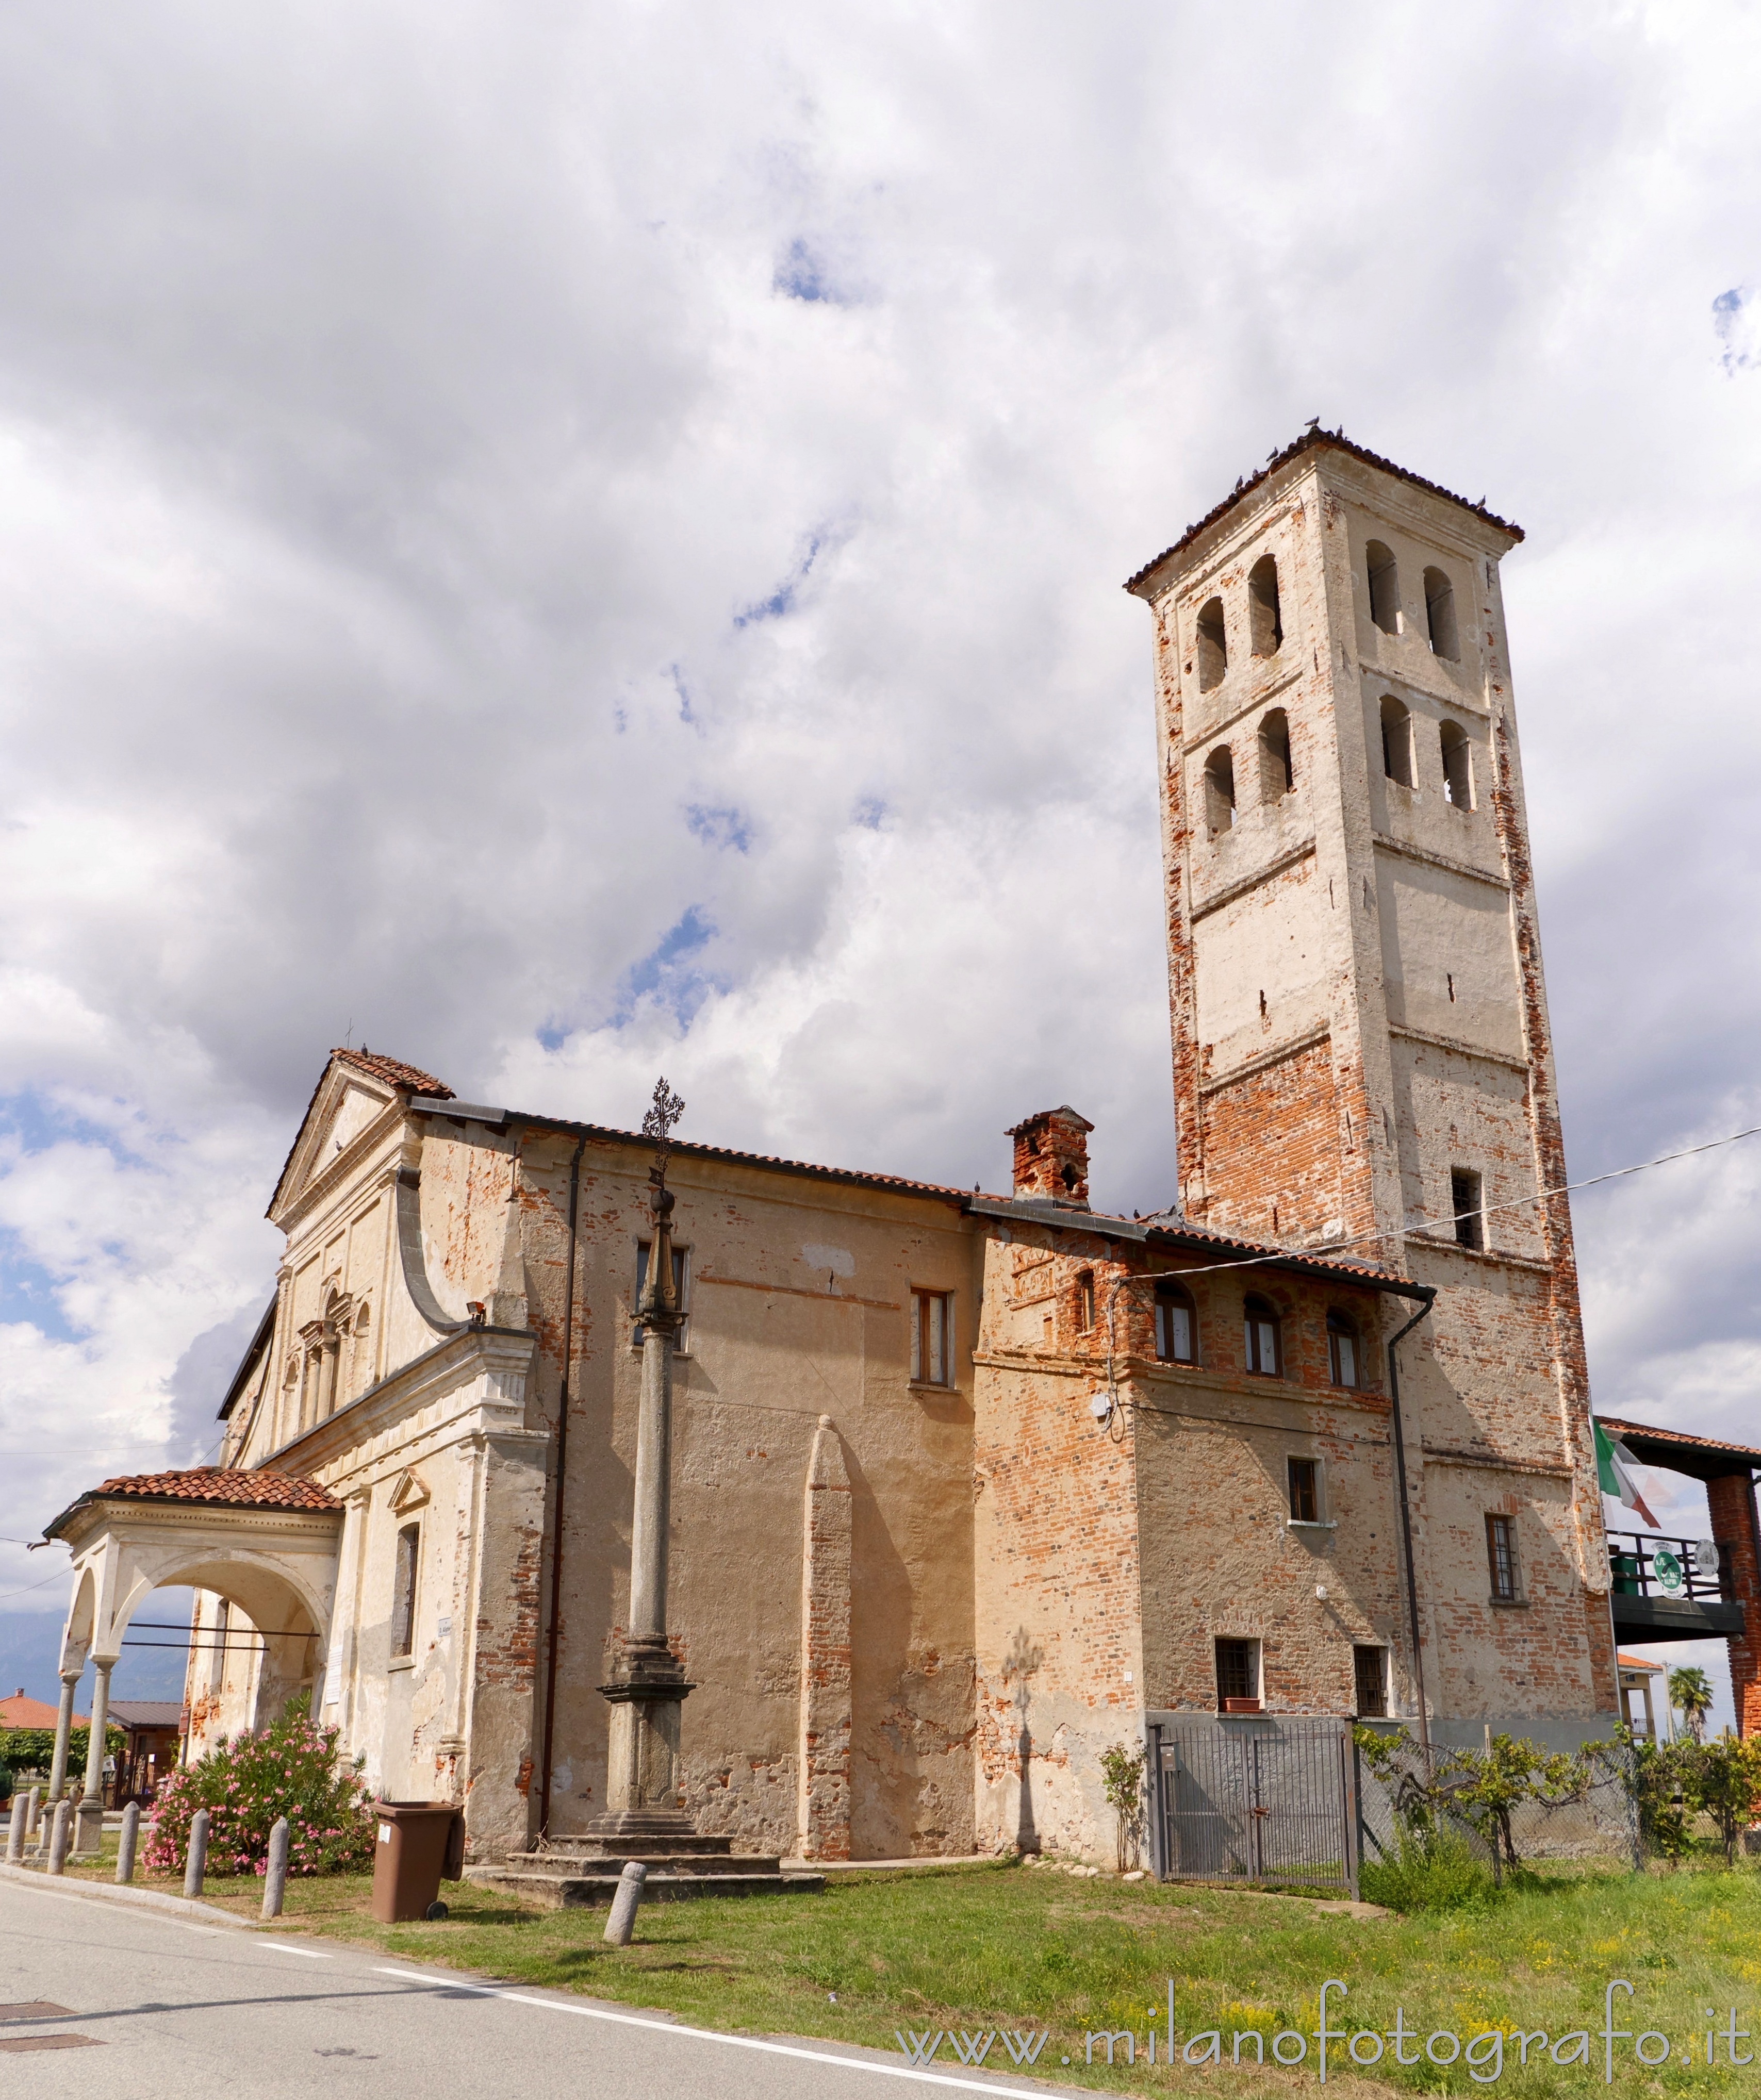 Sandigliano (Biella, Italy): Church of Santa Maria delle Grazie del Barazzone - Sandigliano (Biella, Italy)